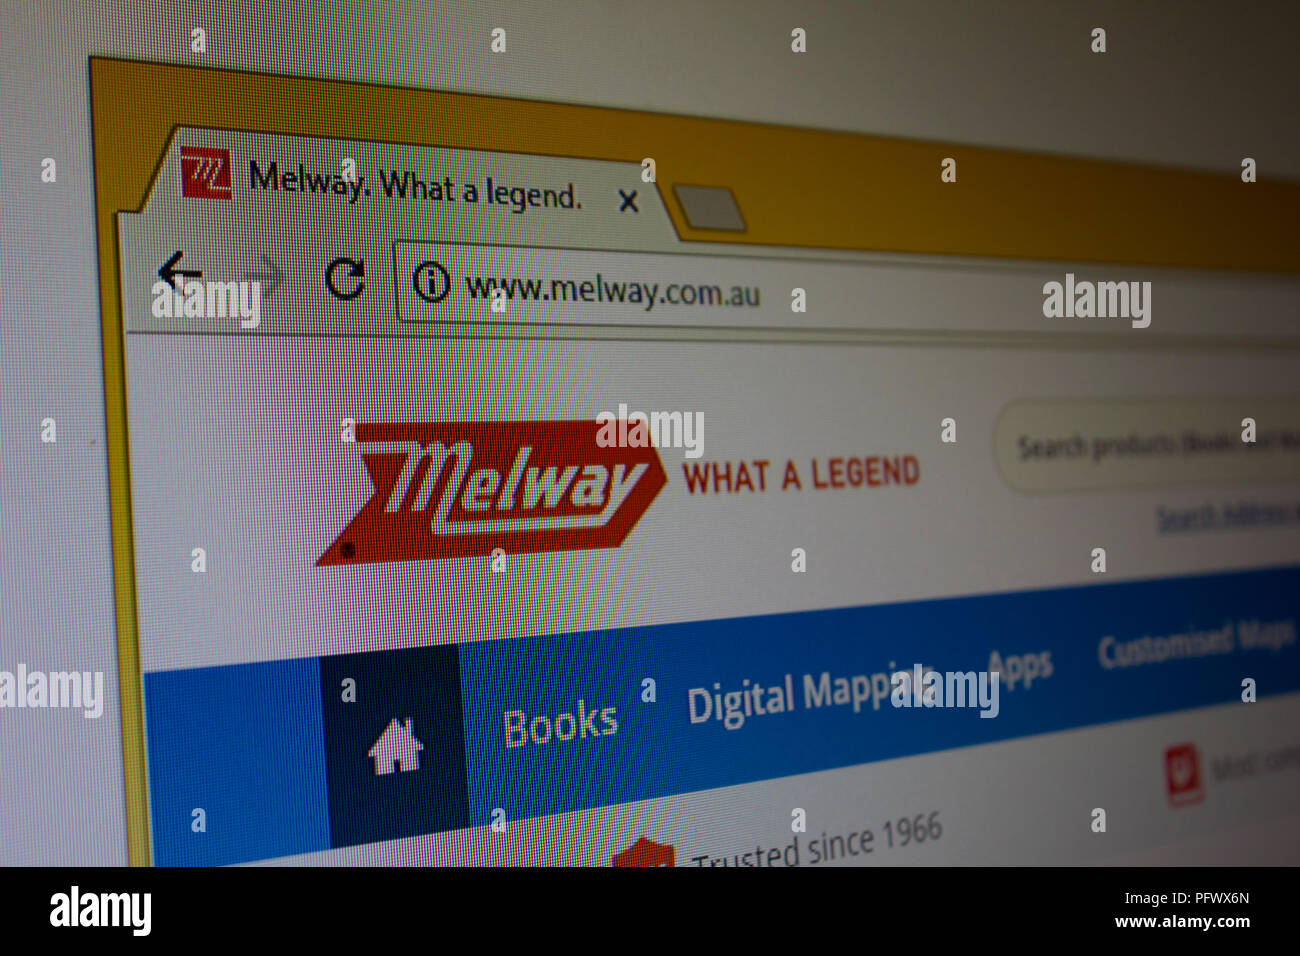 Melway Website Homepage Stock Photo